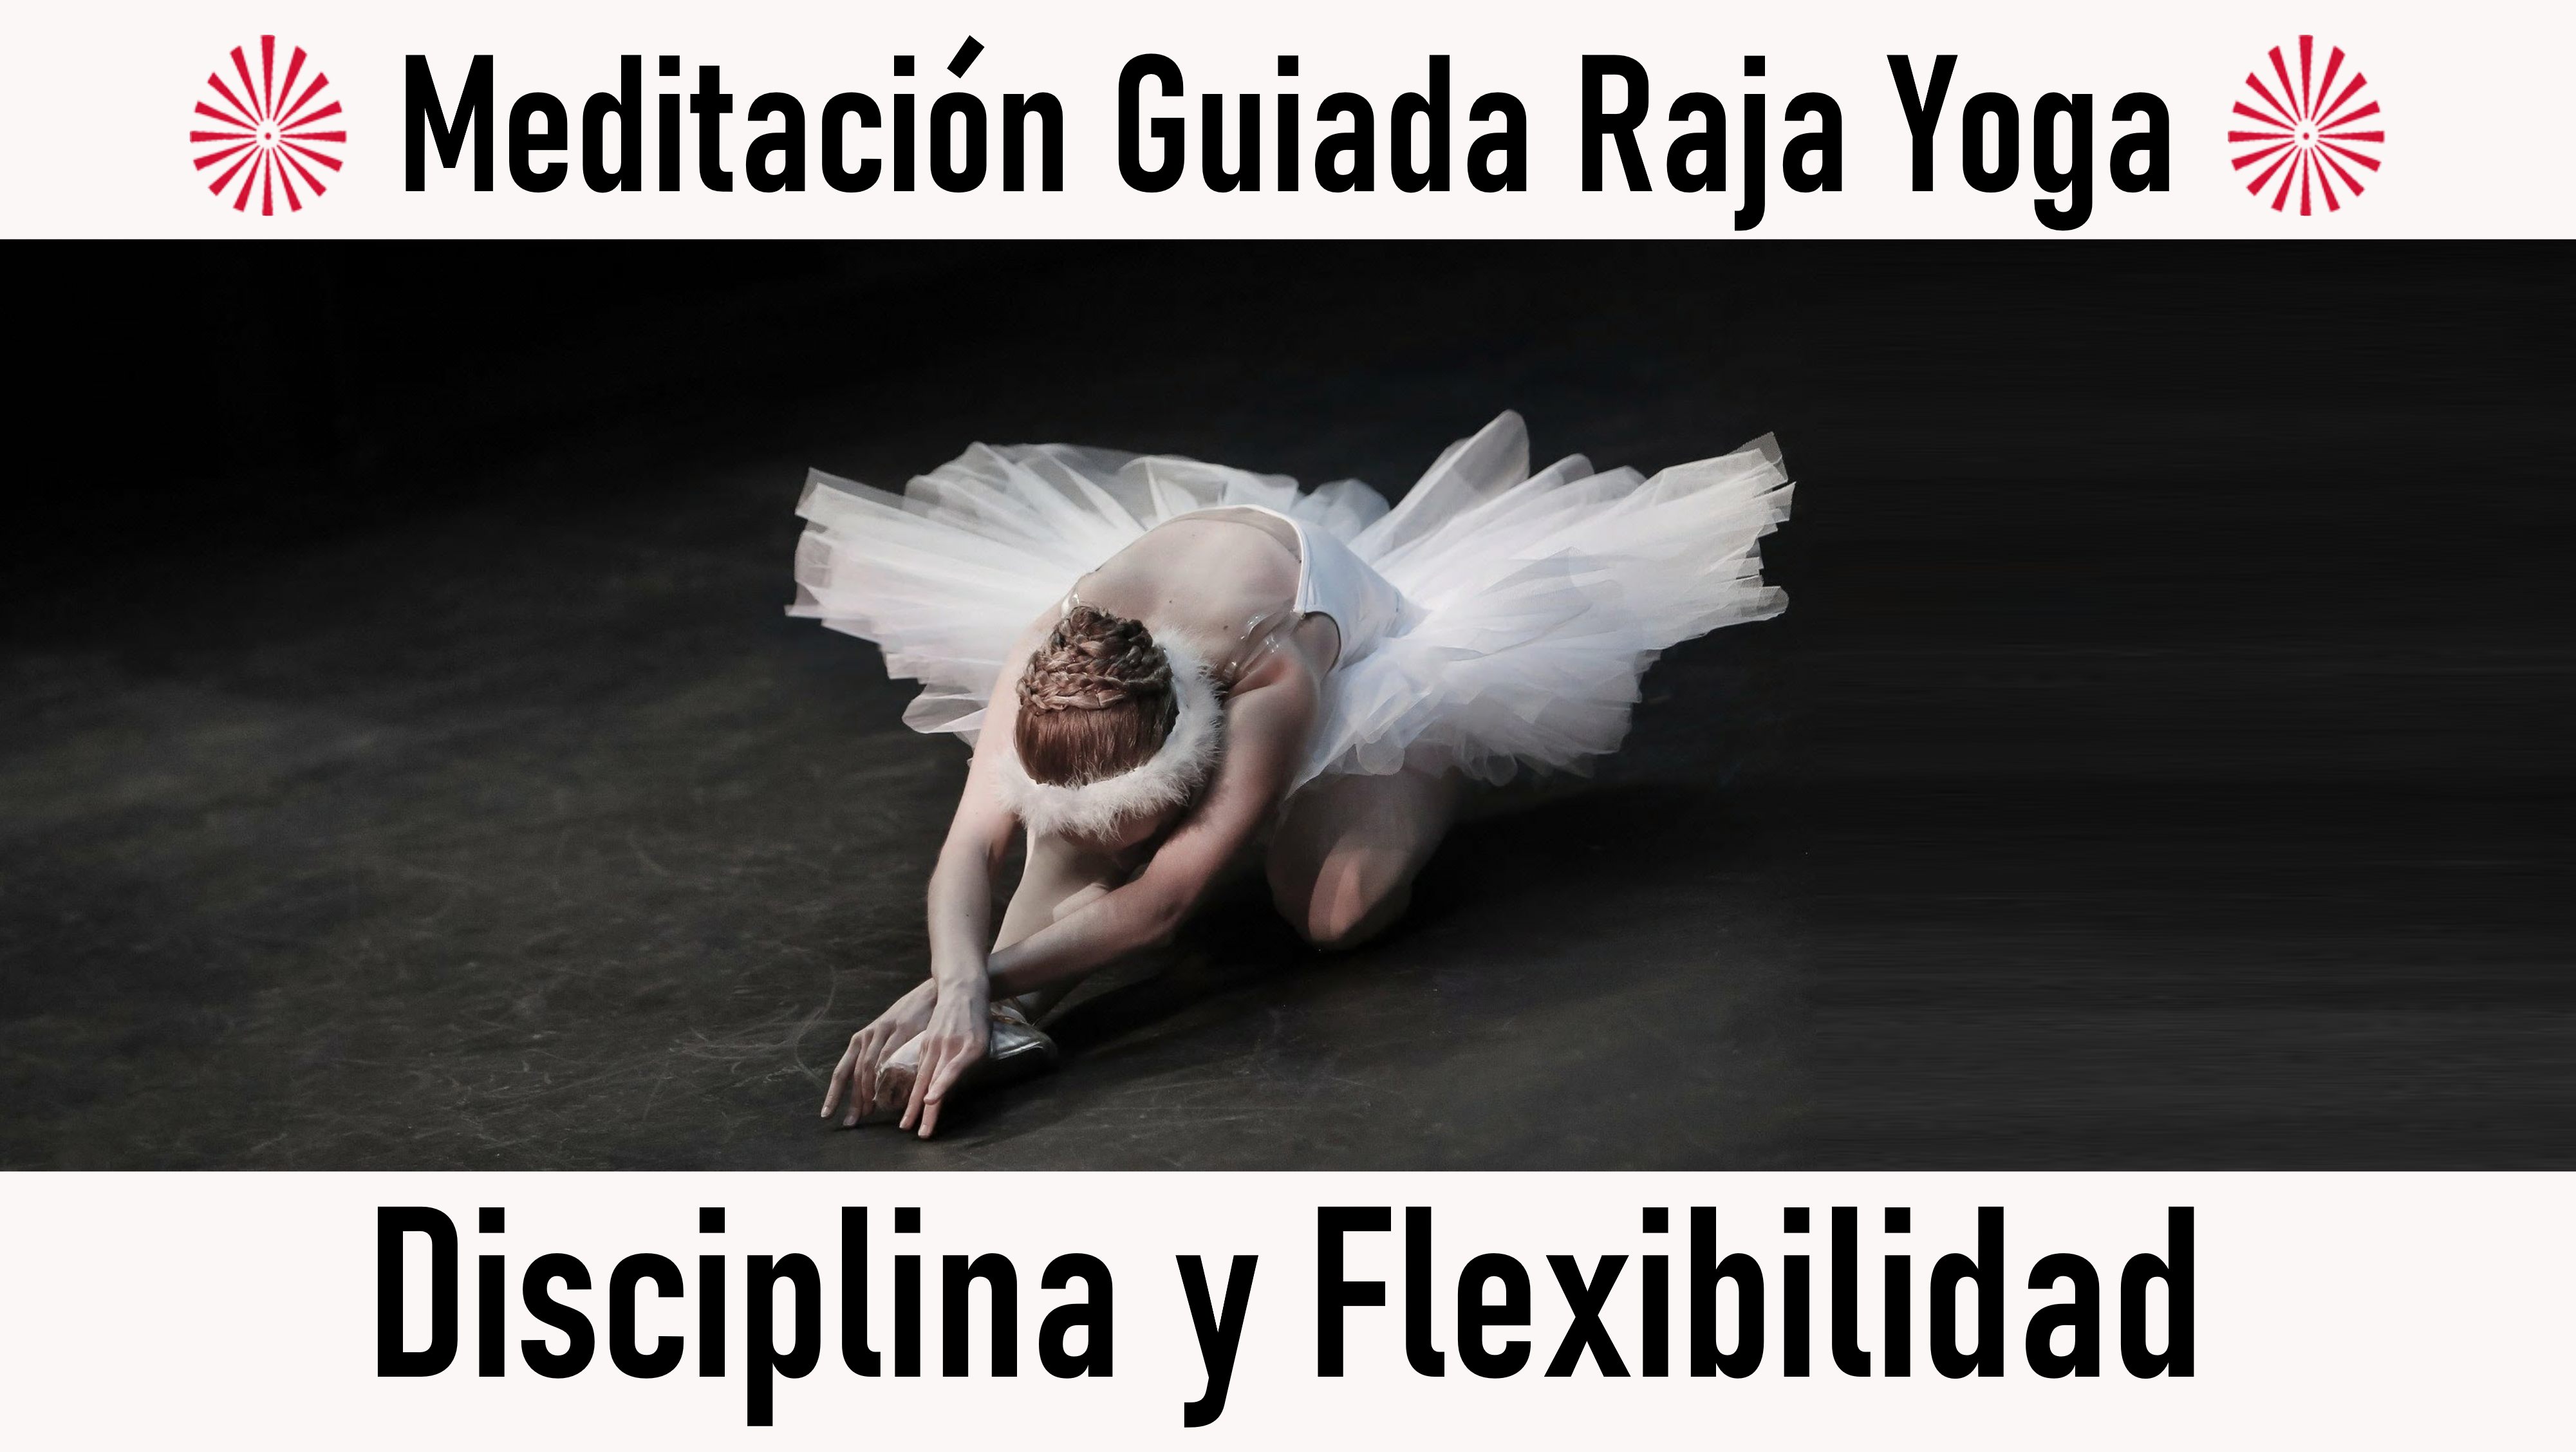 24 Octubre 2020 Meditación guiada:  Disciplina y Flexibilidad